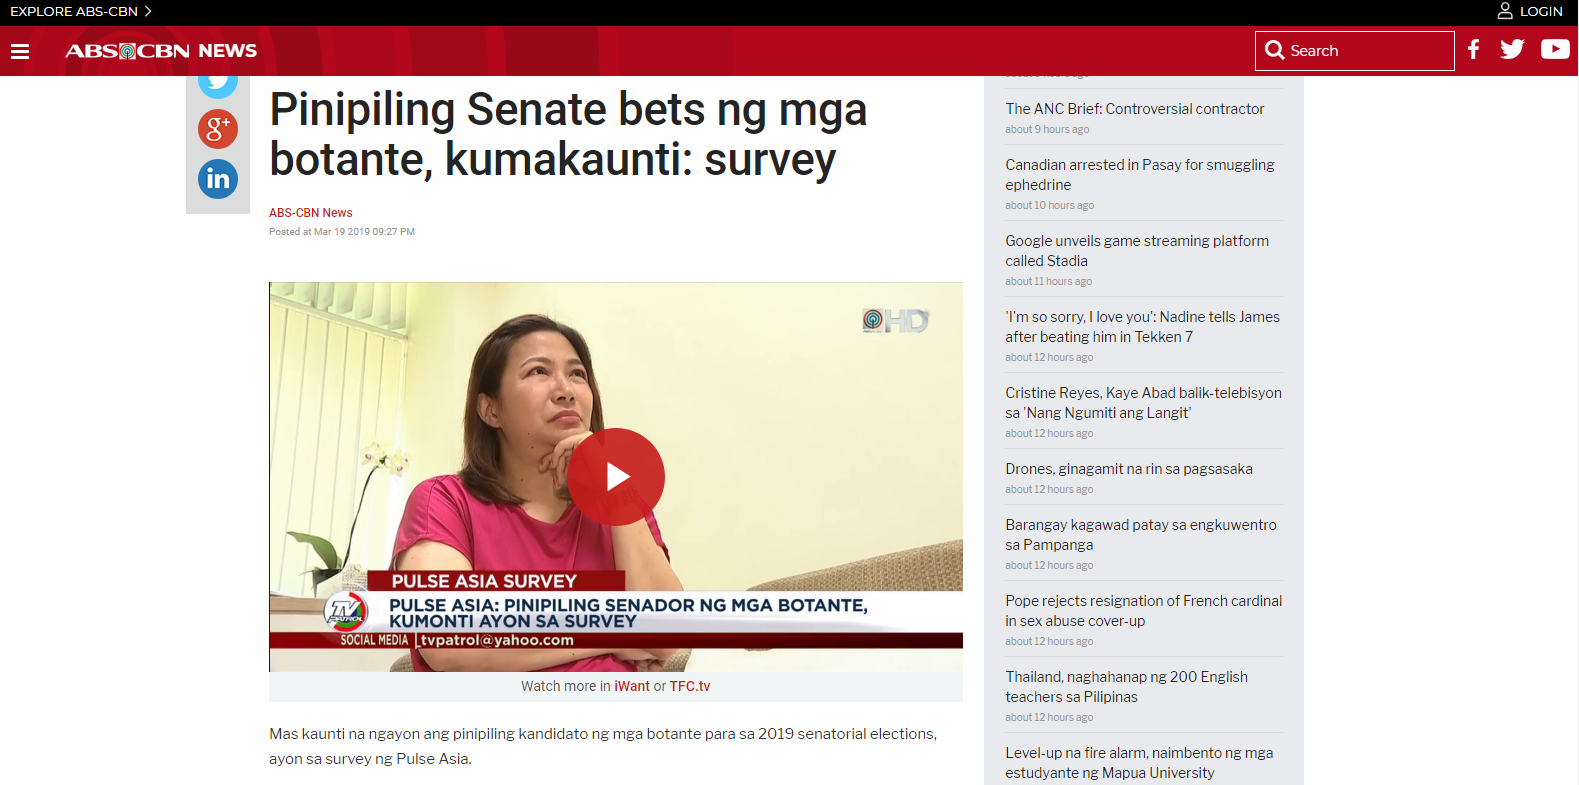 Pinipiling Senate bets ng mga botante, kumakaunti: survey